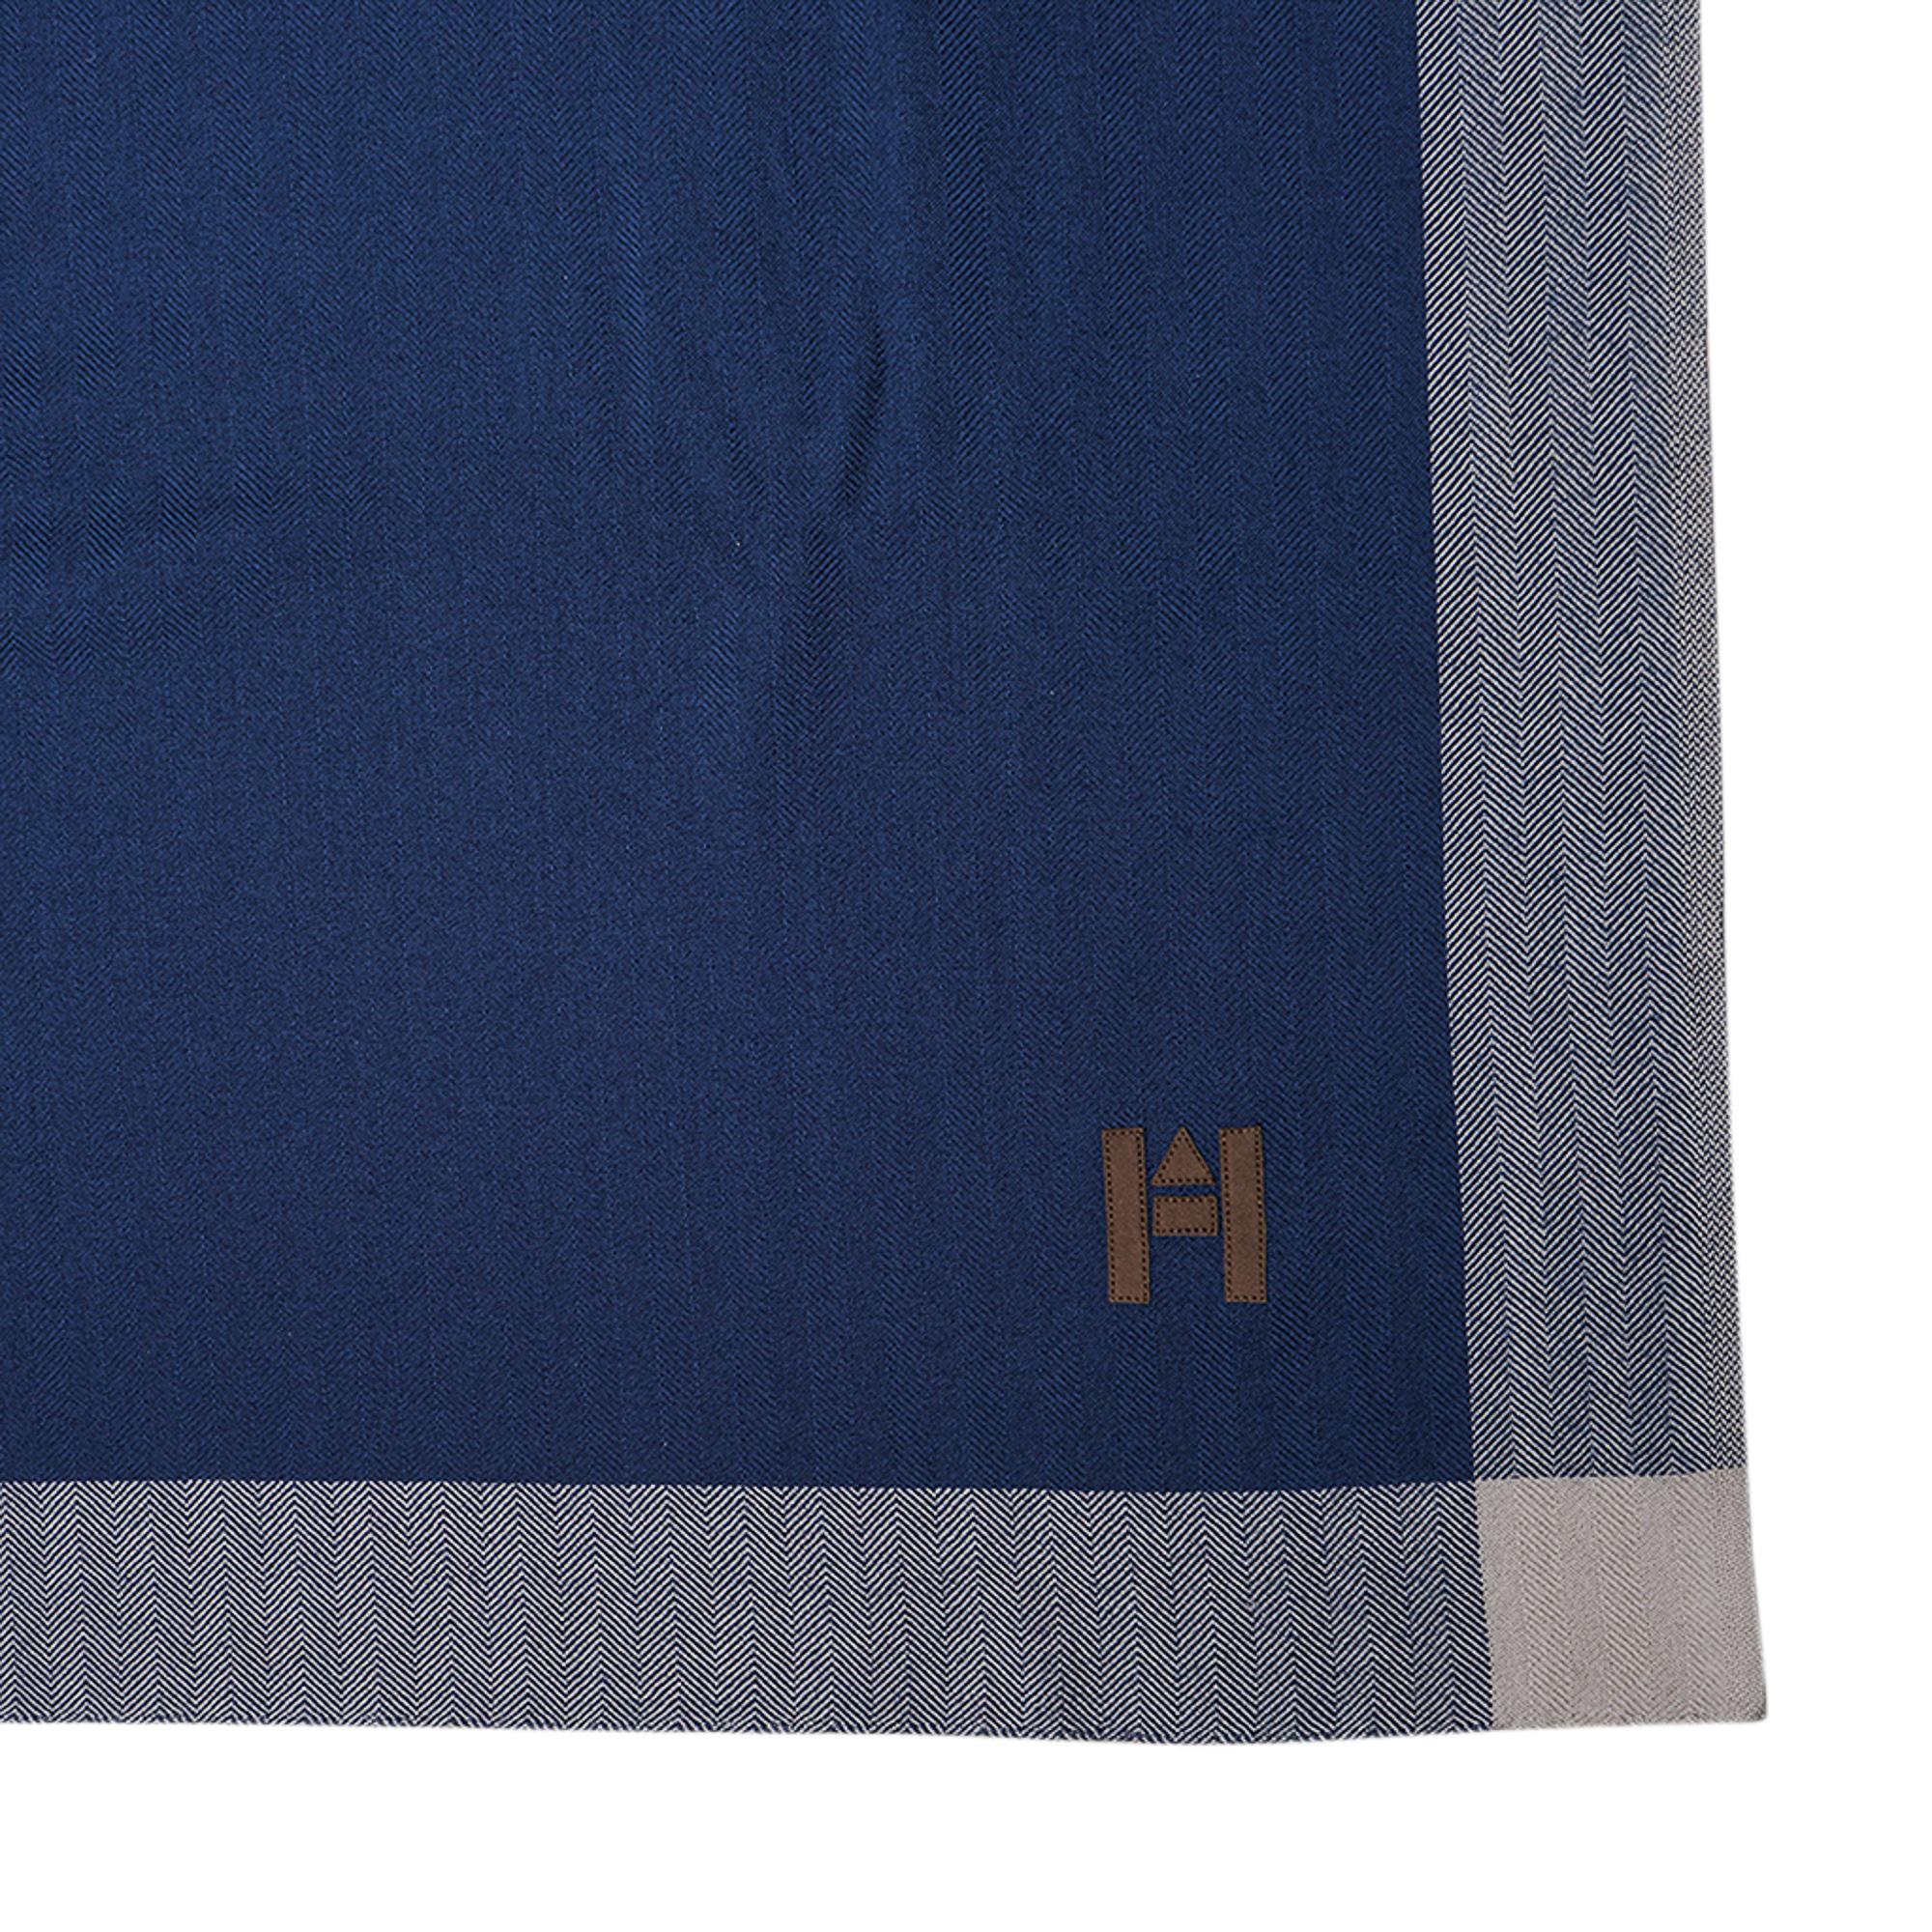 Mightychic propose une édition limitée rare de la couverture et de l'étui de voyage Hermès en cachemire bleu et crème.
De forme rectangulaire.
La couverture et l'étui ont un détail en H en cuir brun.
Garniture à chevrons bleu et crème.
Le luxe